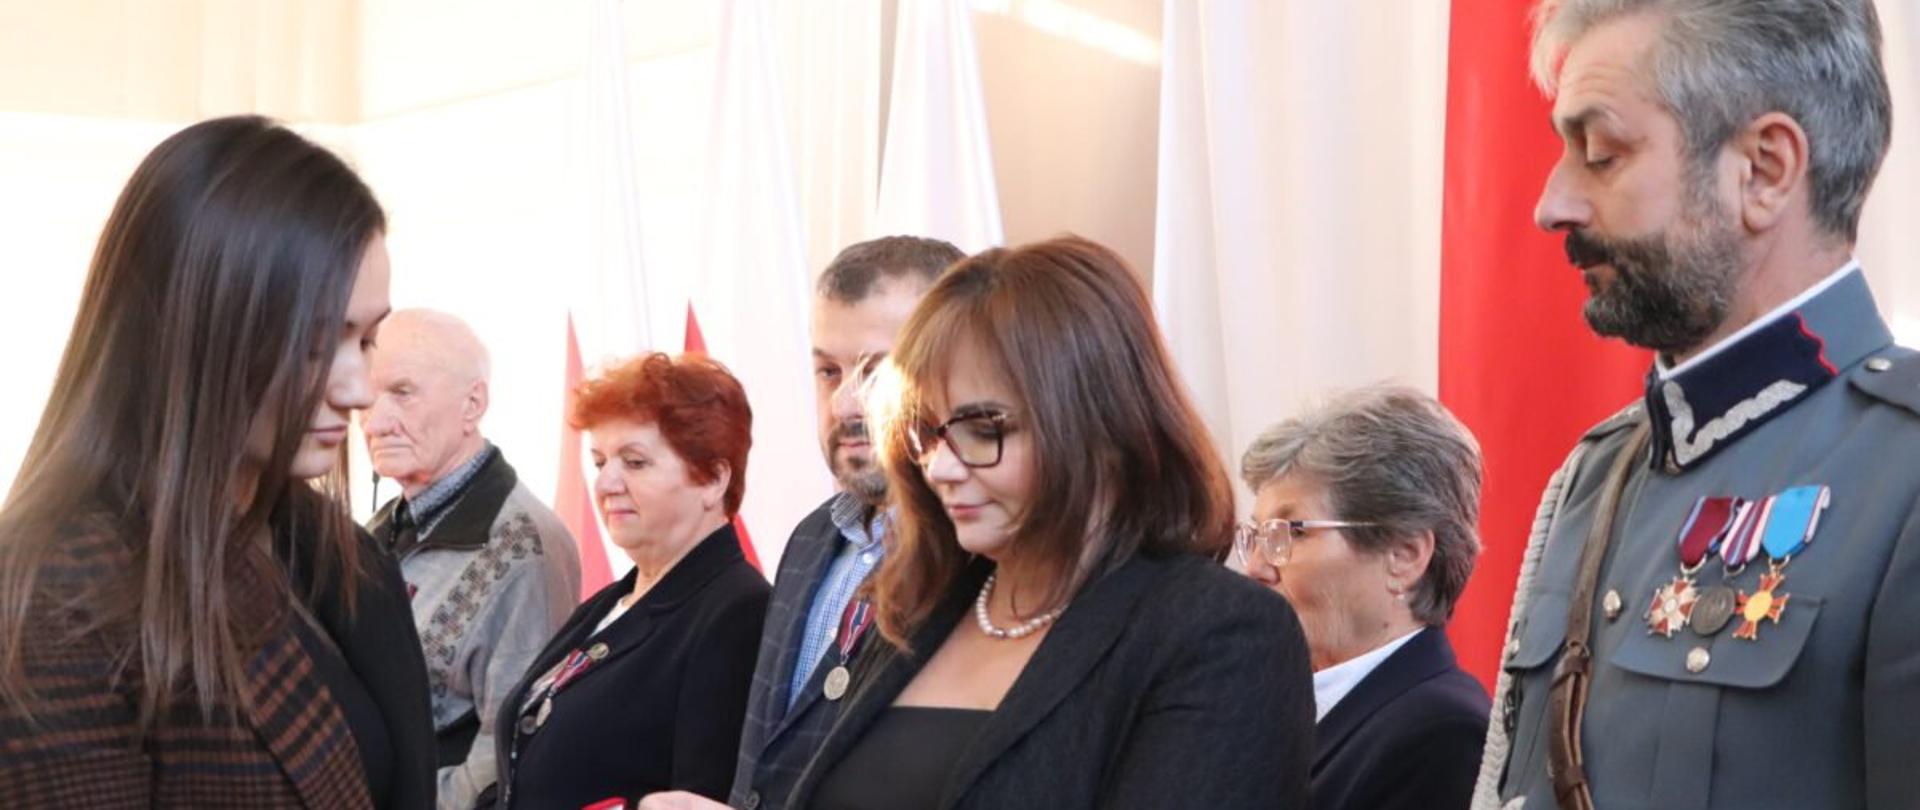 Wicewojewoda podkarpacki Jolanta Sawicka wraz z uczestnikami międzypokoleniowego spotkania upamiętniającego losy Zesłańców Sybiru